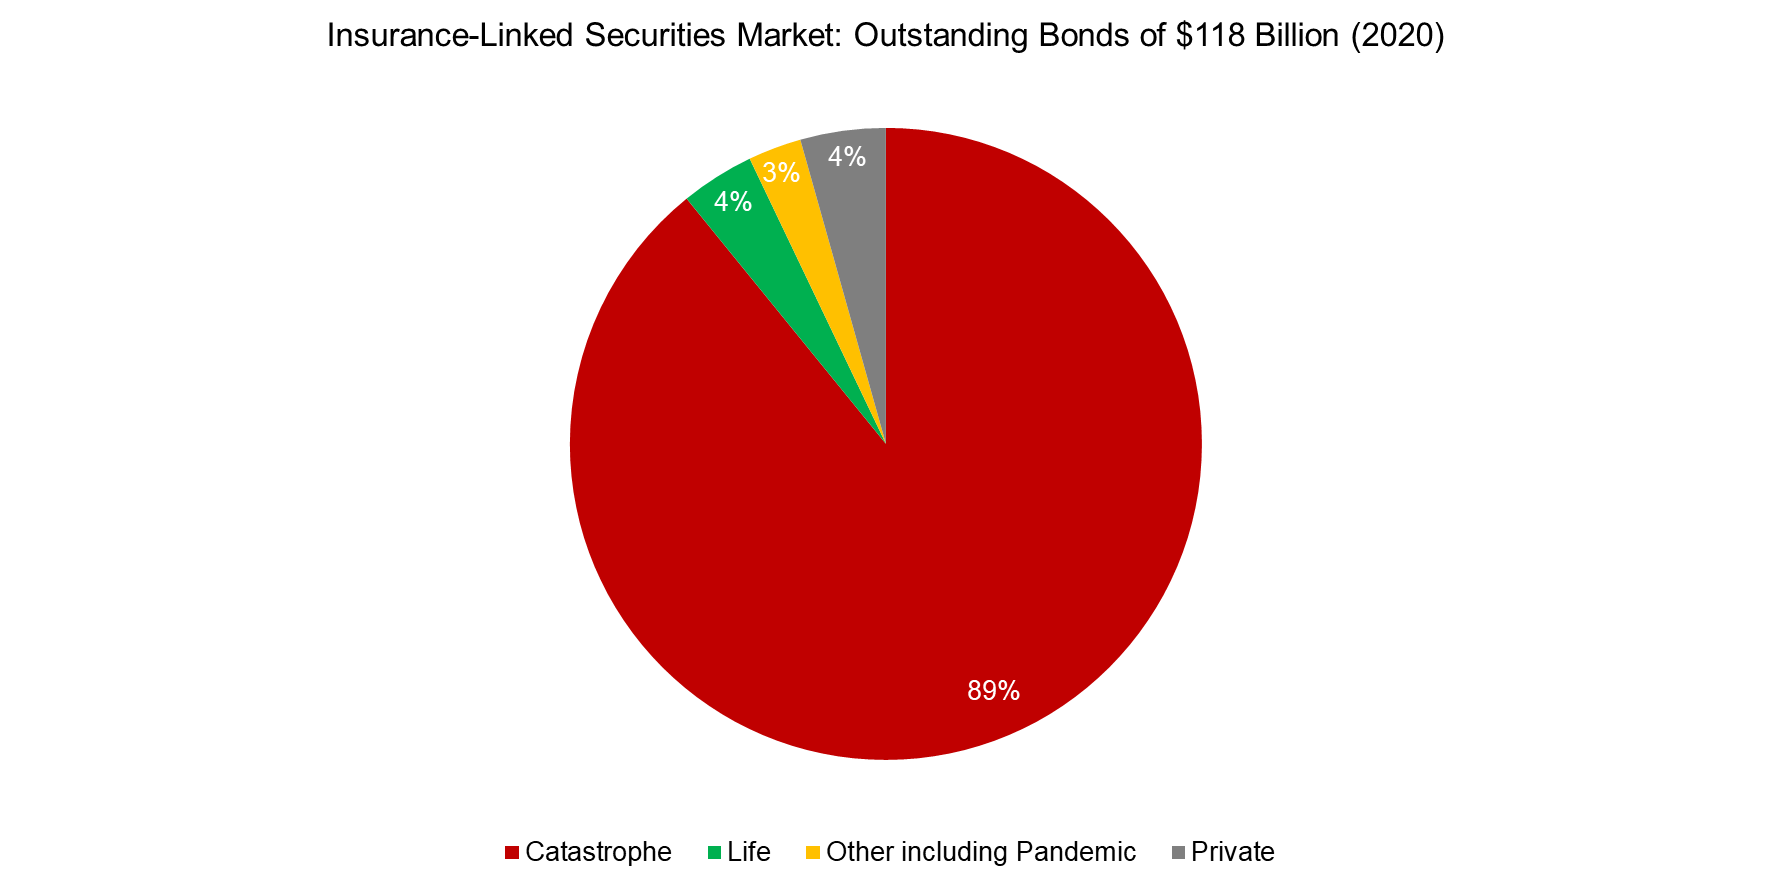 Insurance-Linked Securities Market Outstanding Bonds of $118 Billion (2020)